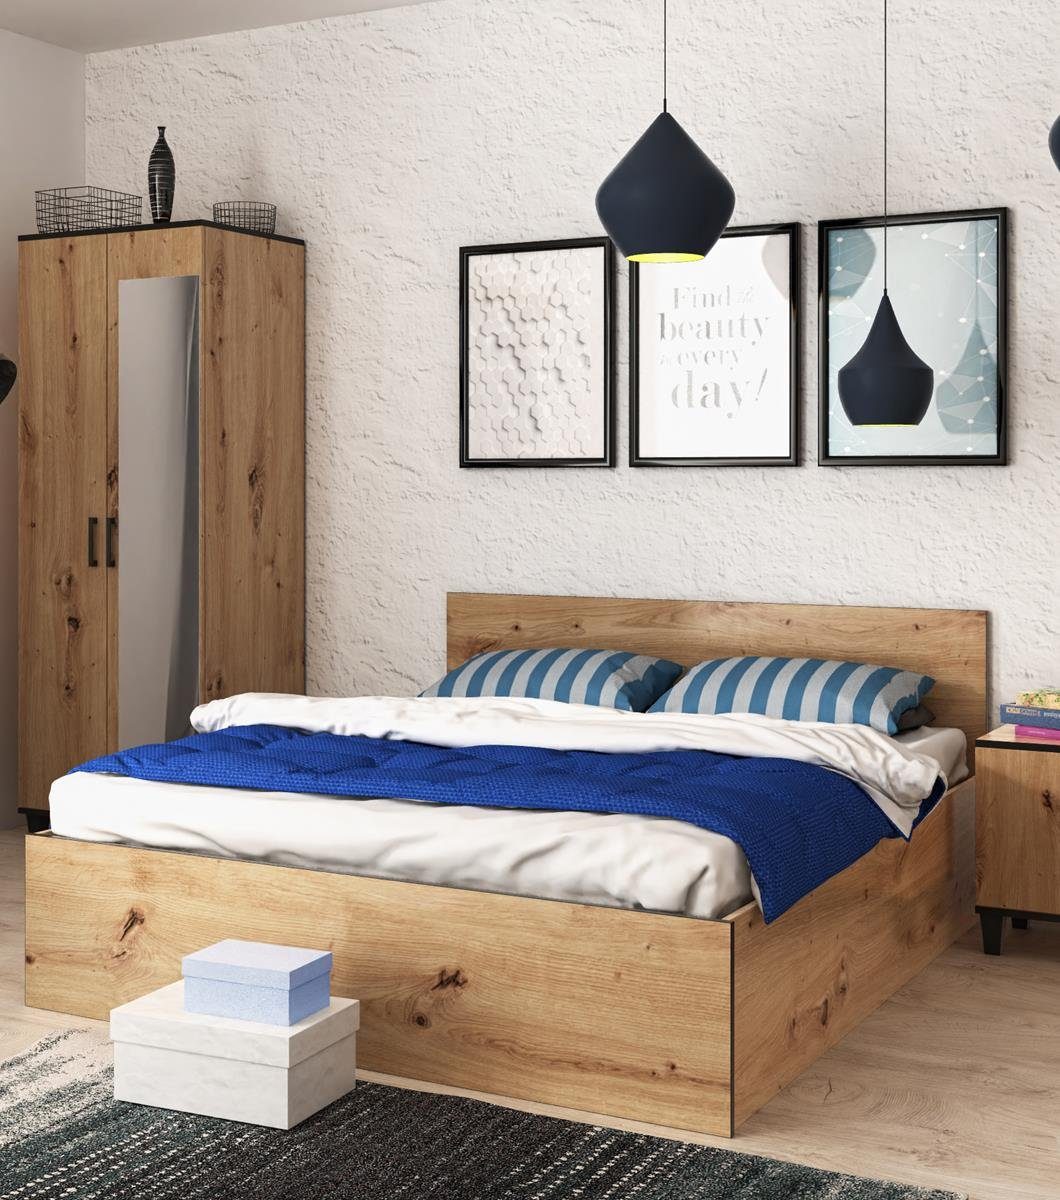 Beautysofa Holzbett P13 Die Lieferung gilt für die Einbringung in die Wohnung (mit Bettkasten, Liegefläche 160x200 cm), Bett mit Holzgestell, Lattenrost, loft / rustikal Stil